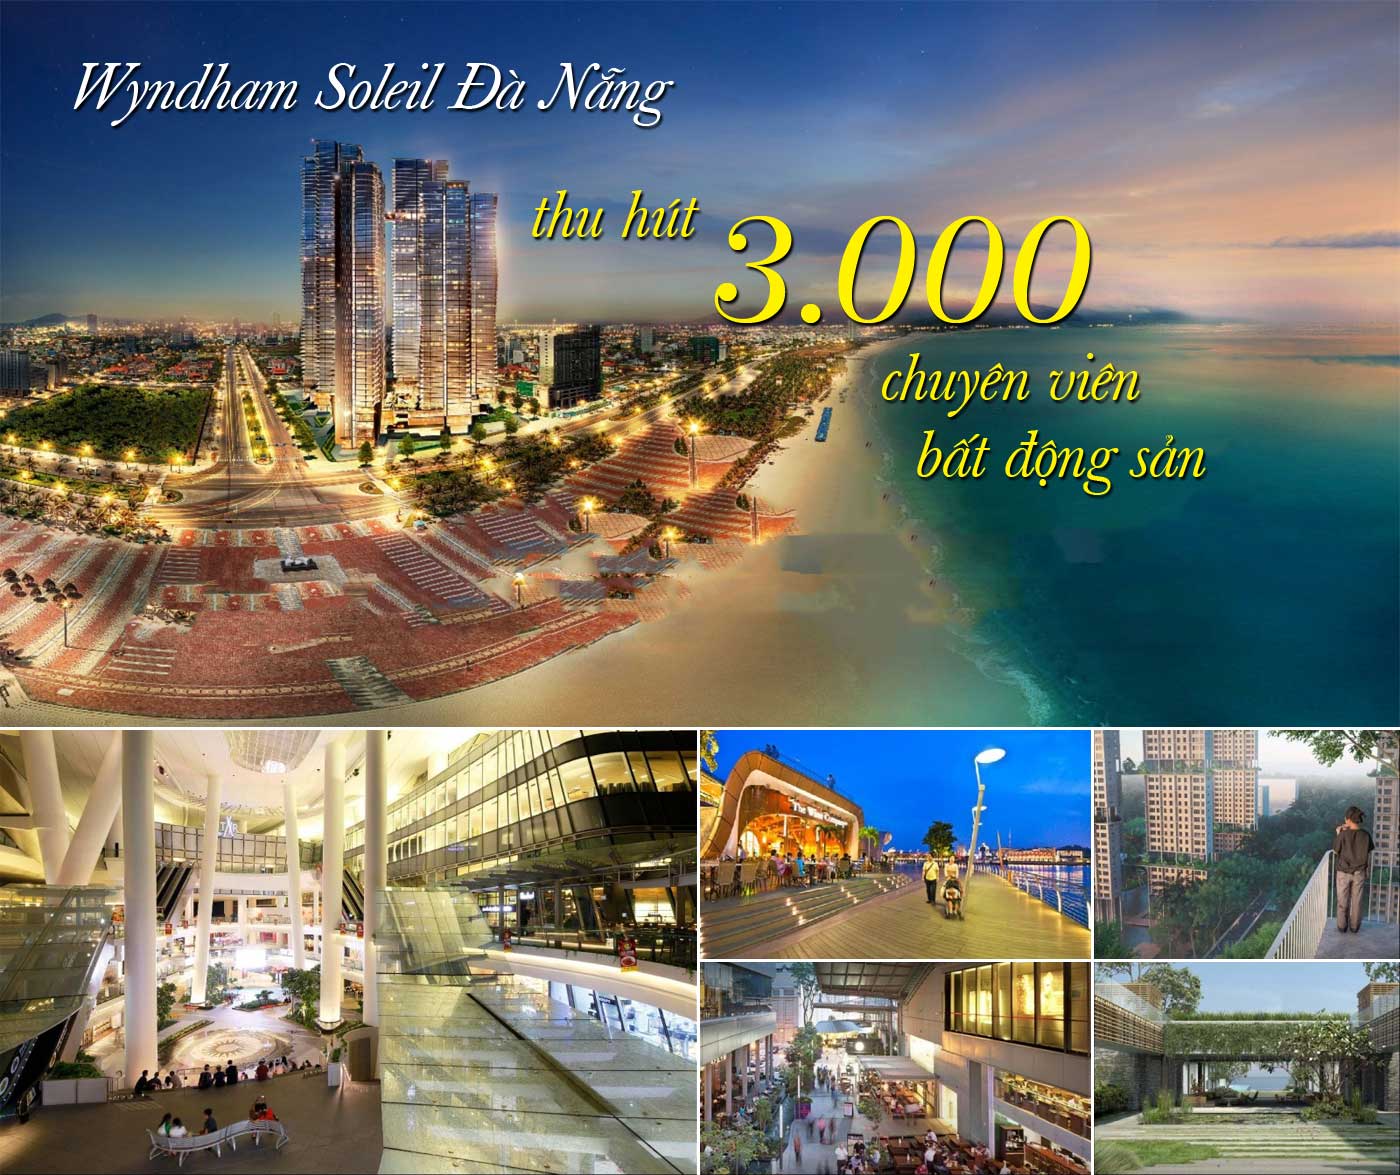 Wyndham Soleil Đà Nẵng thu hút 3.000 chuyên viên bất động sản - Ảnh 1